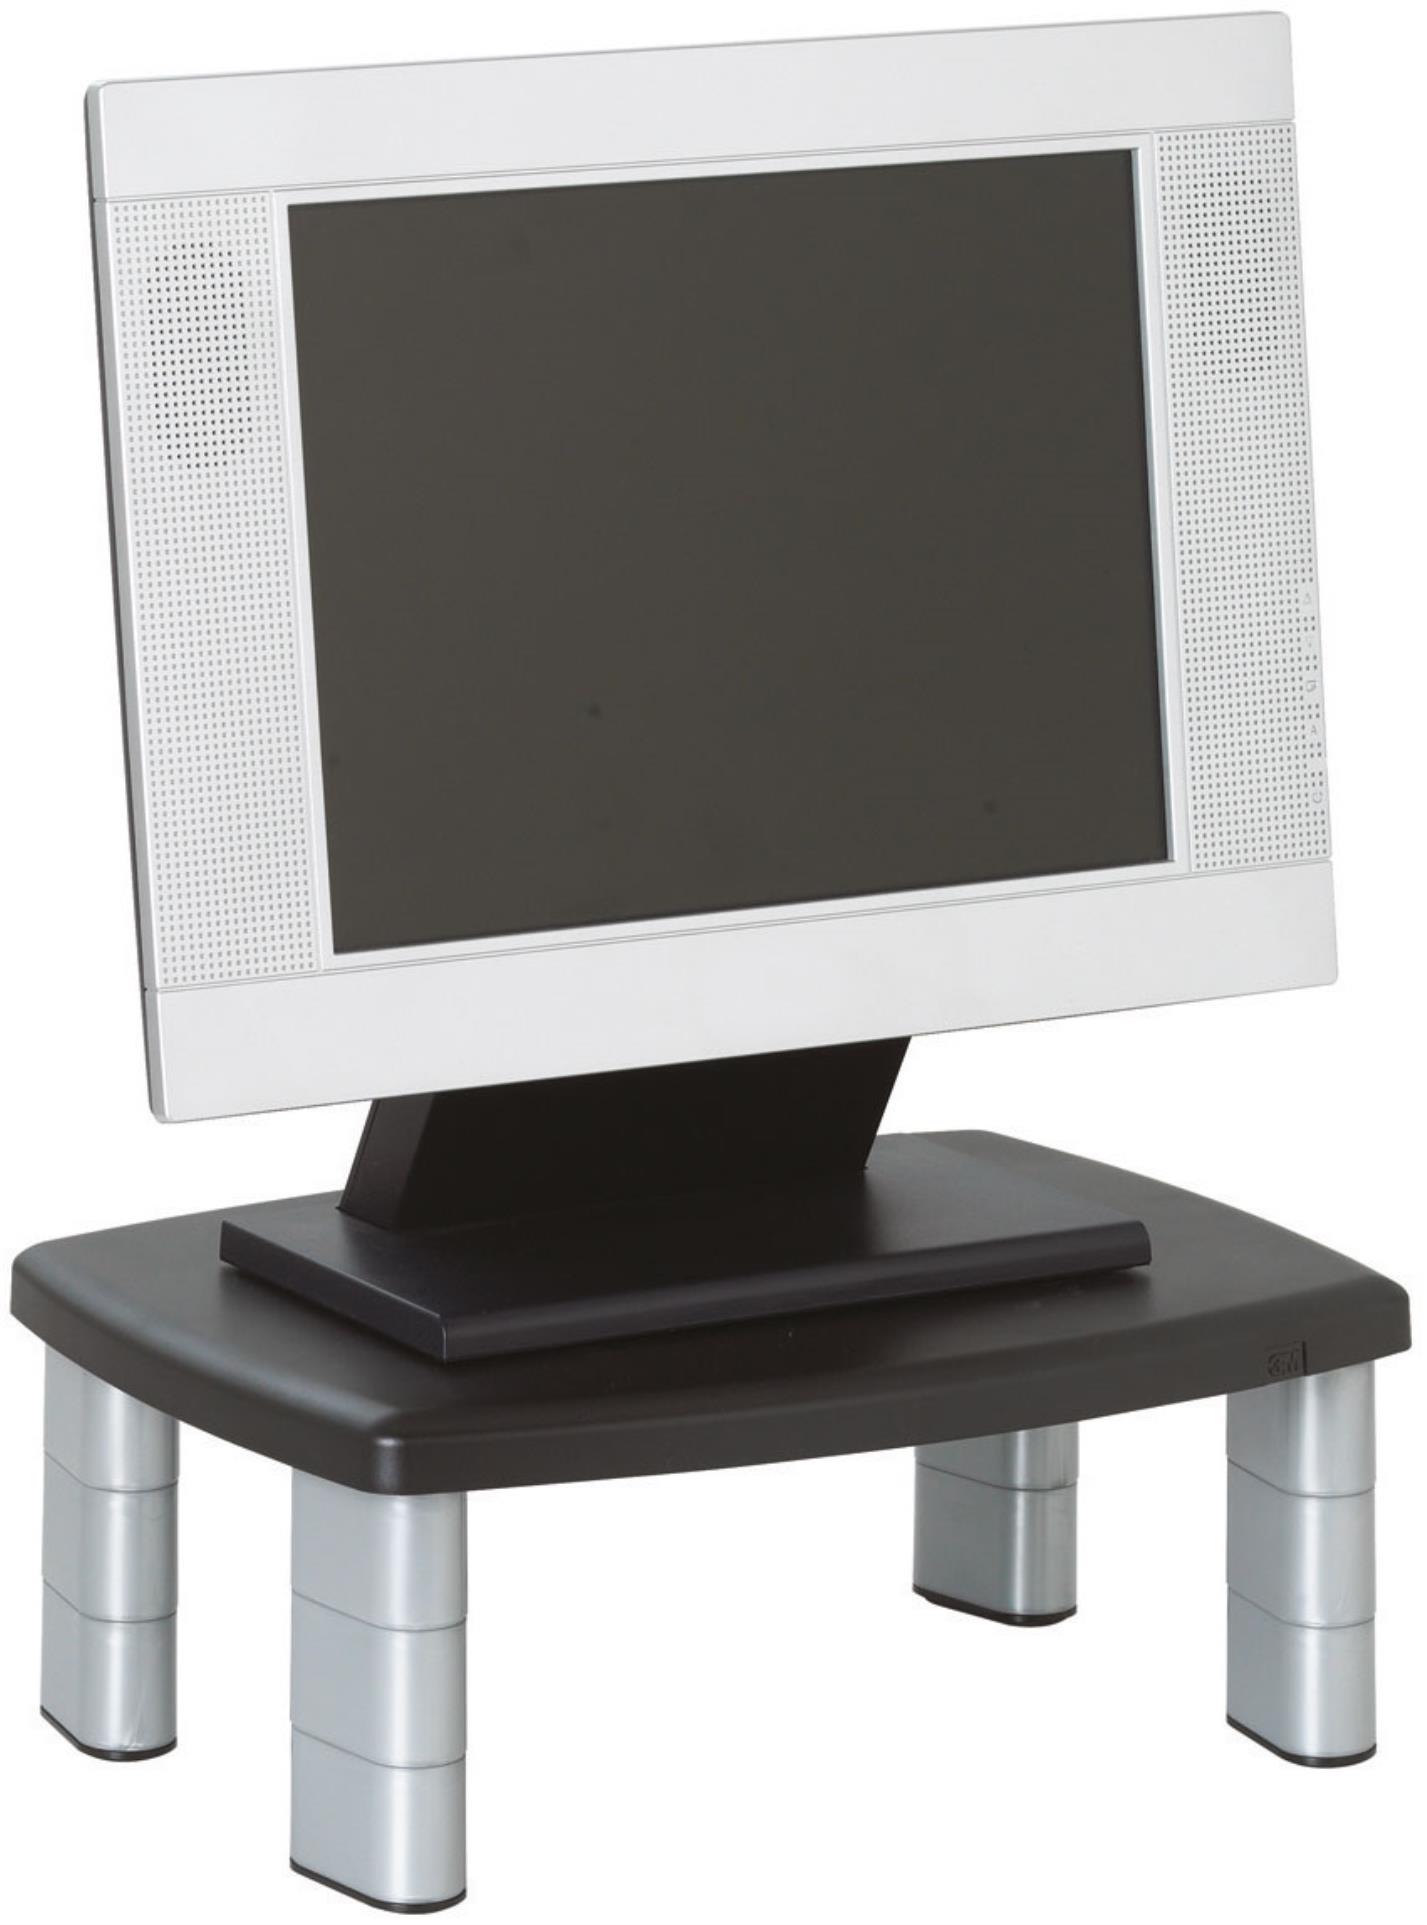 3M Nastavitelný podstavec pod monitor - černý/stříbrný